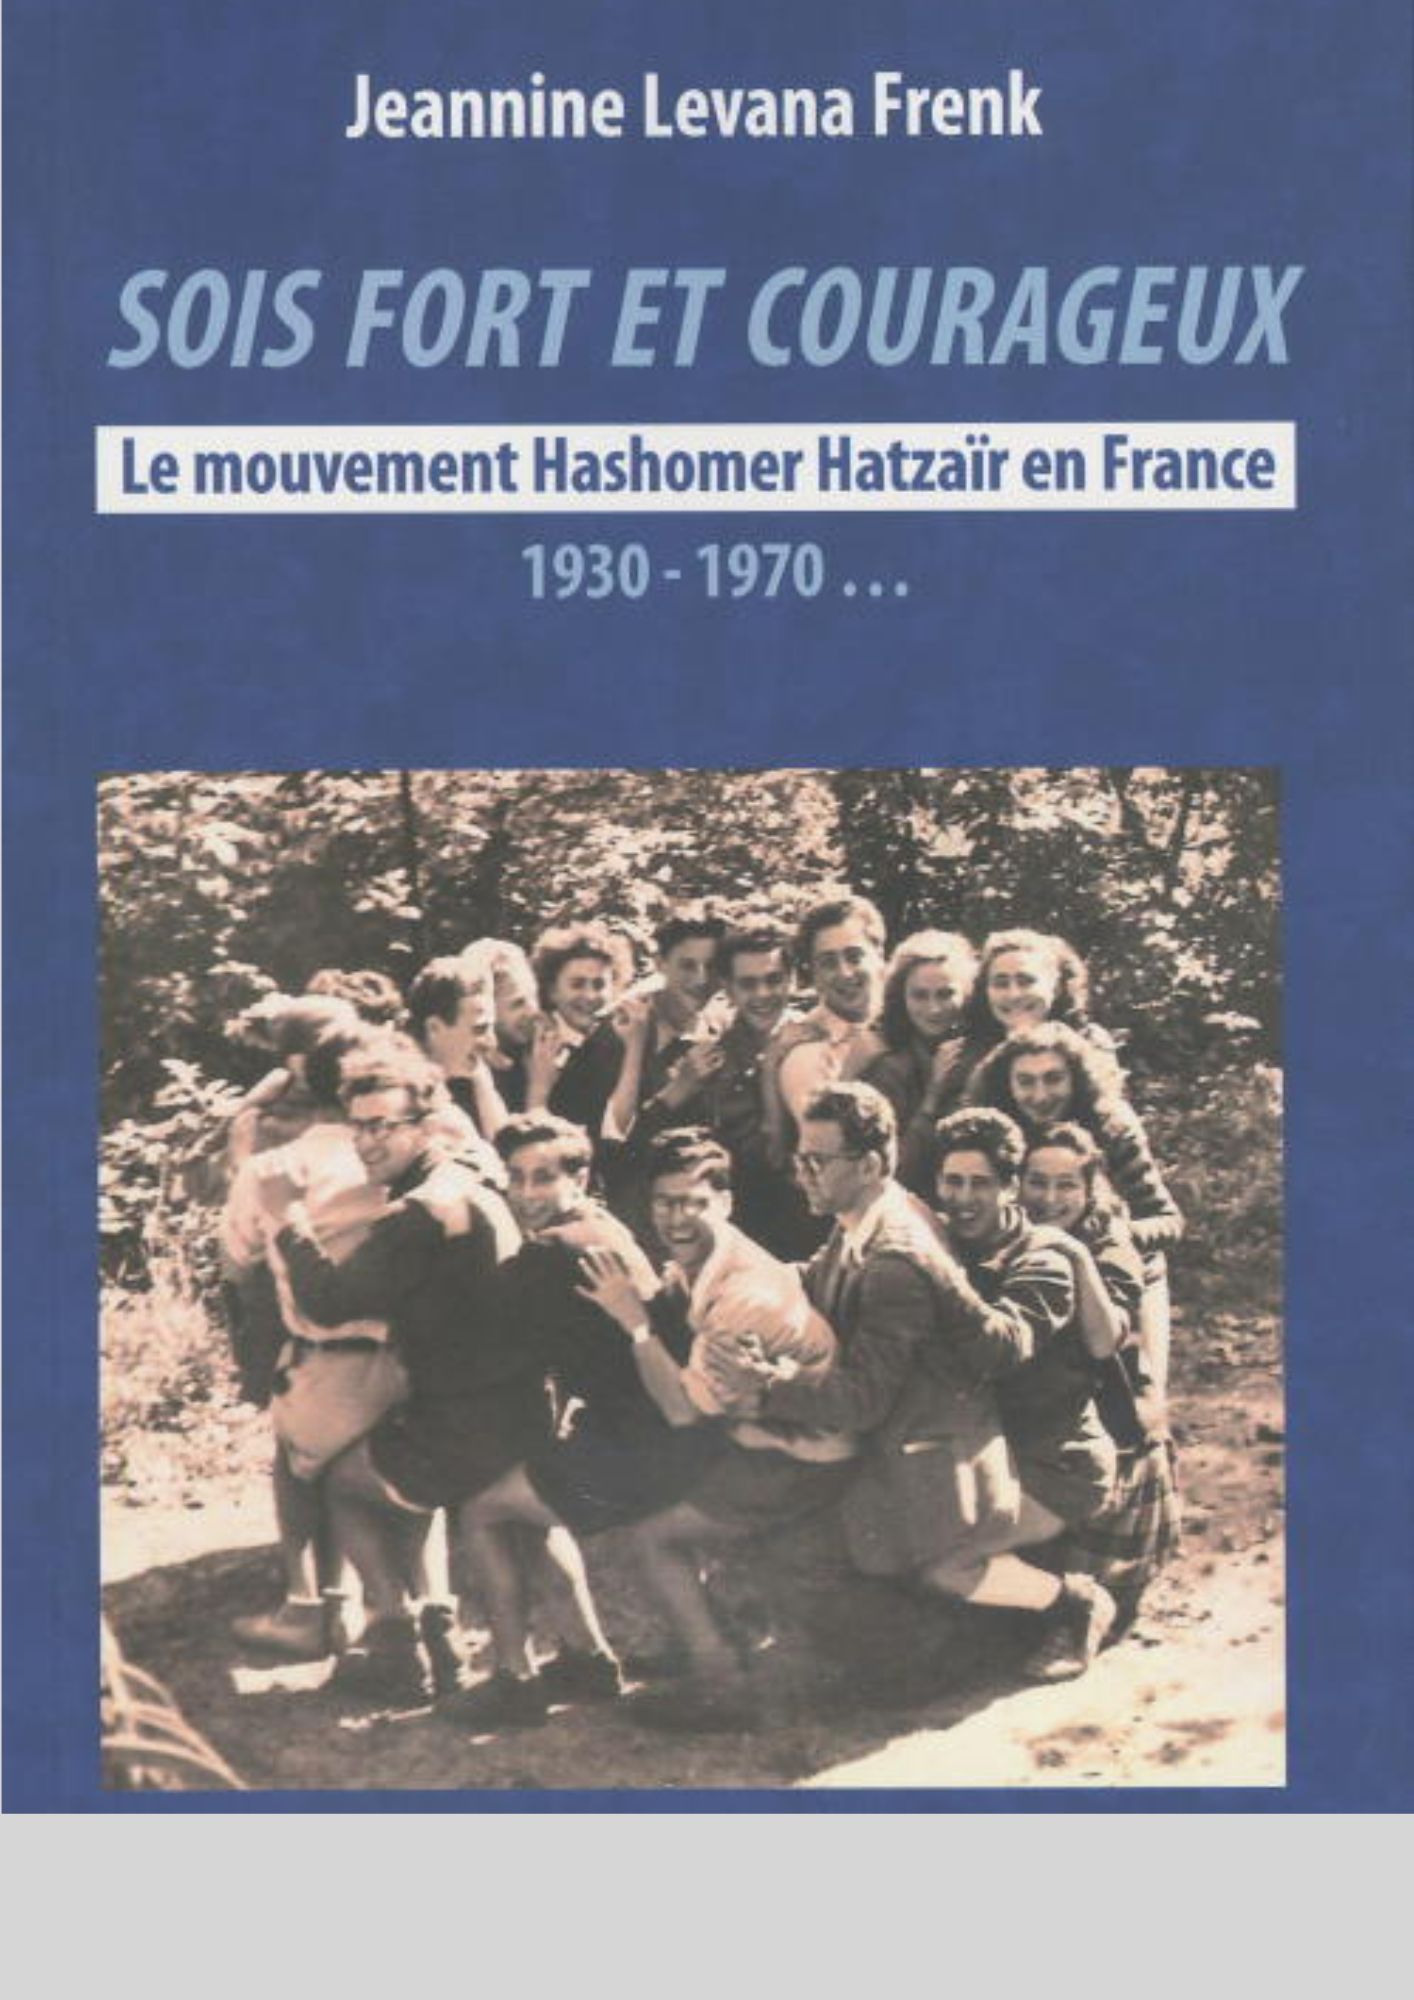 חזק ואמץ, קורות תנועת השומר הצעיר בצרפת, 1930-1970...ז'אנין לבנה פרנק (Frenk)